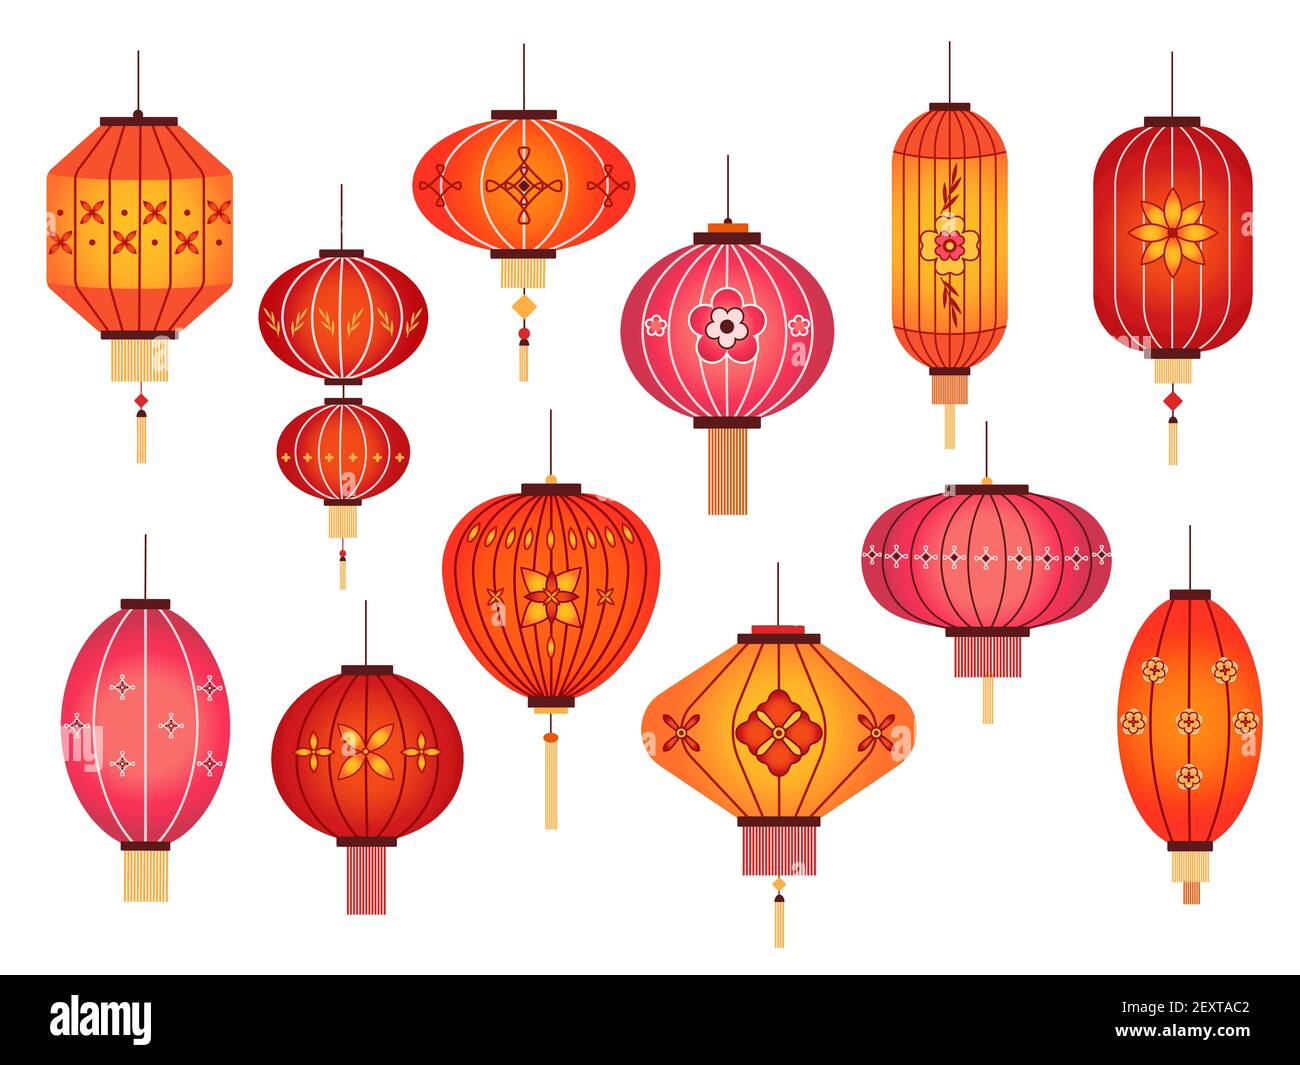 Lanternes chinoises. Chinatown et la décoration de la lampe rouge des fêtes  de la rue japonaise. Éléments vectoriels asiatiques traditionnels de la  nouvelle année isolés sur du blanc Image Vectorielle Stock -